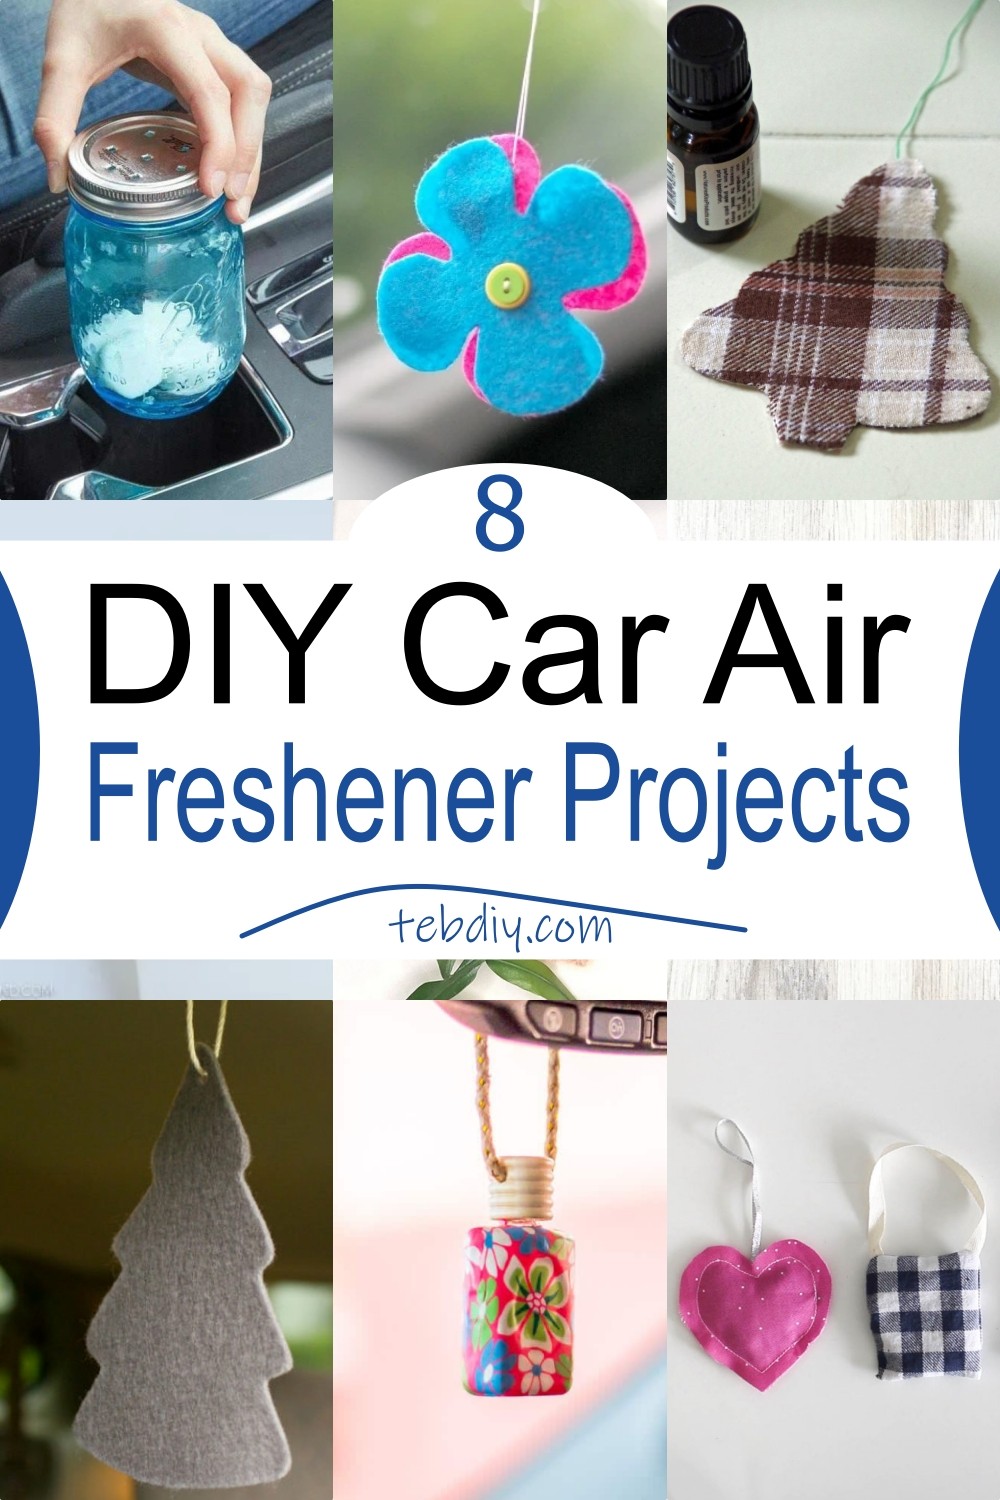 DIY Car Air Freshener Projects